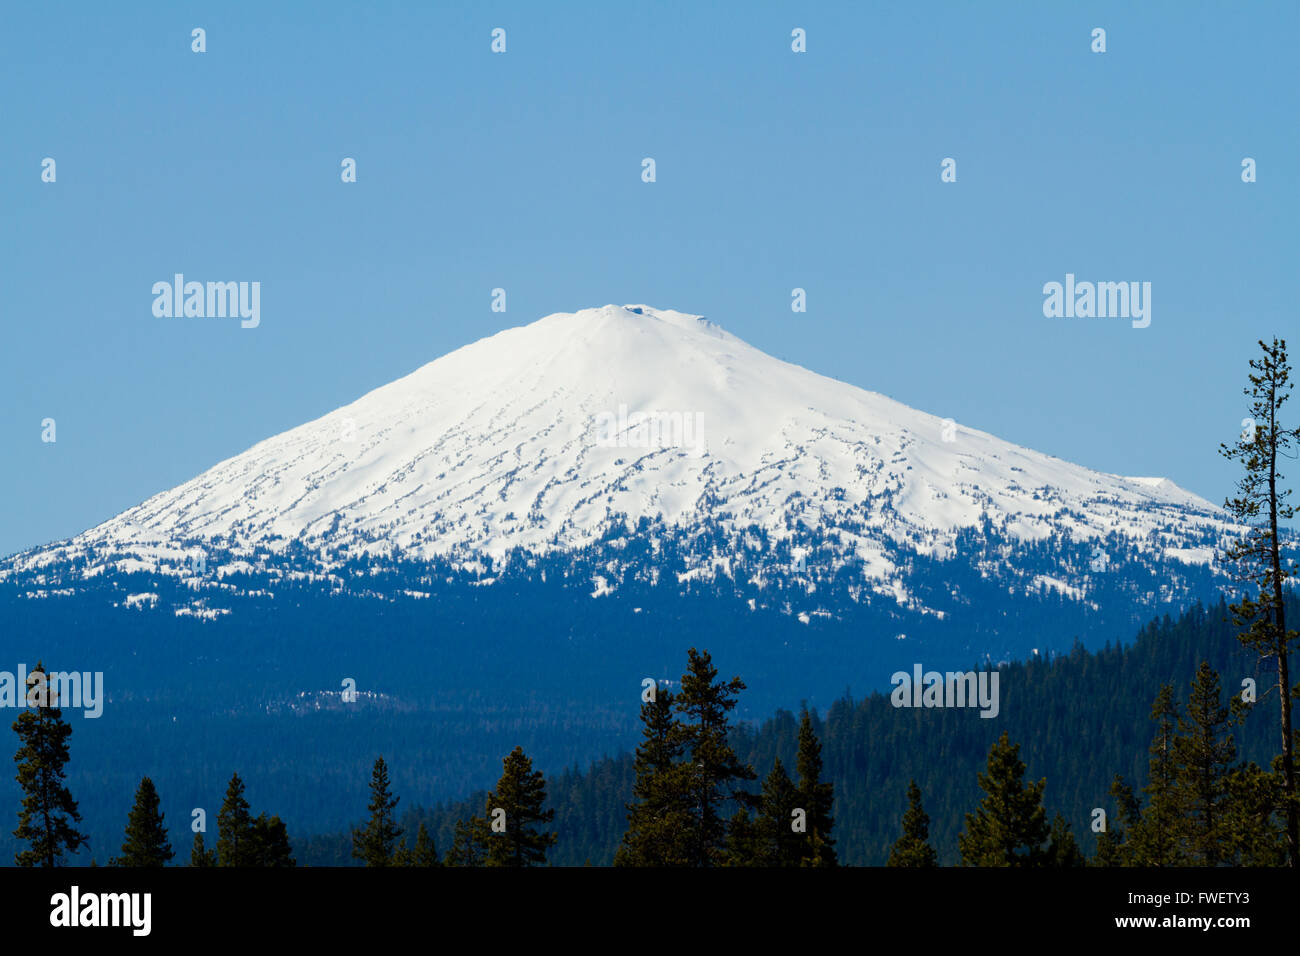 Mount Bachelor en Oregon es fotografiado desde una distancia para crear esta naturaleza el paisaje de la montaña cubierta de nieve. Foto de stock